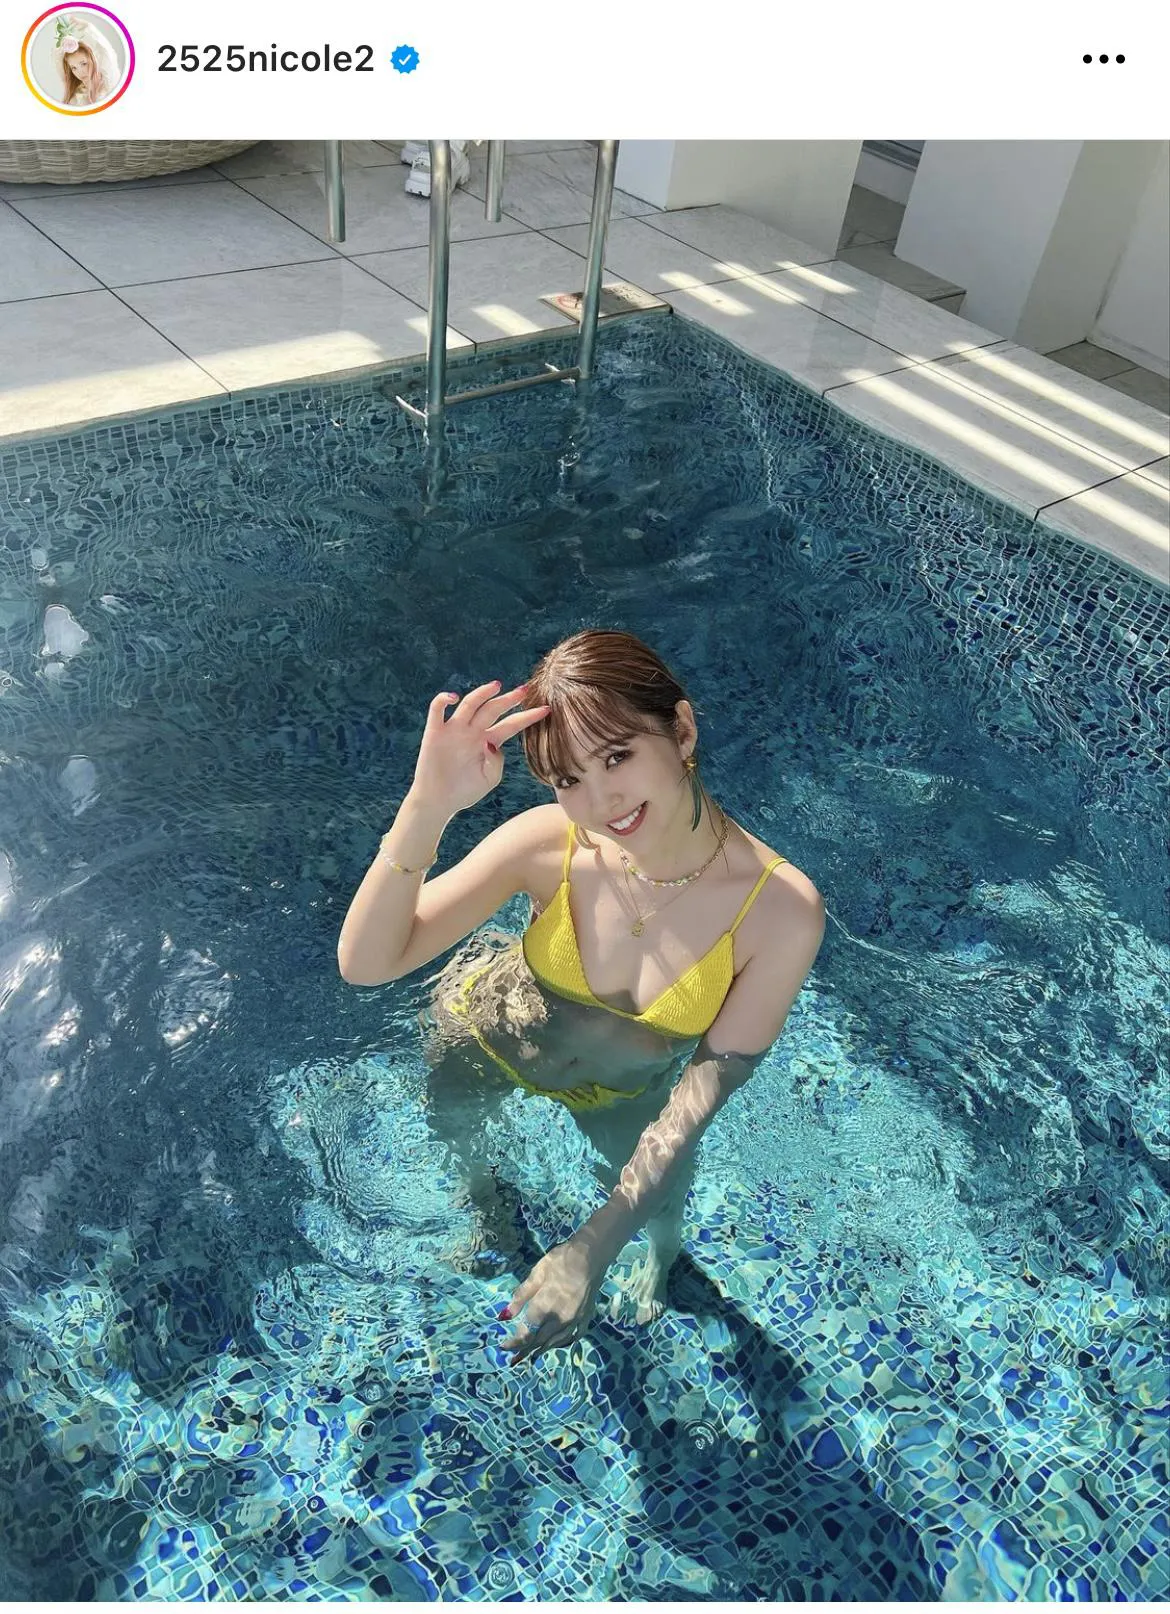 黄色いビキニでプールを満喫、はじける夏ショット公開の藤田二コル